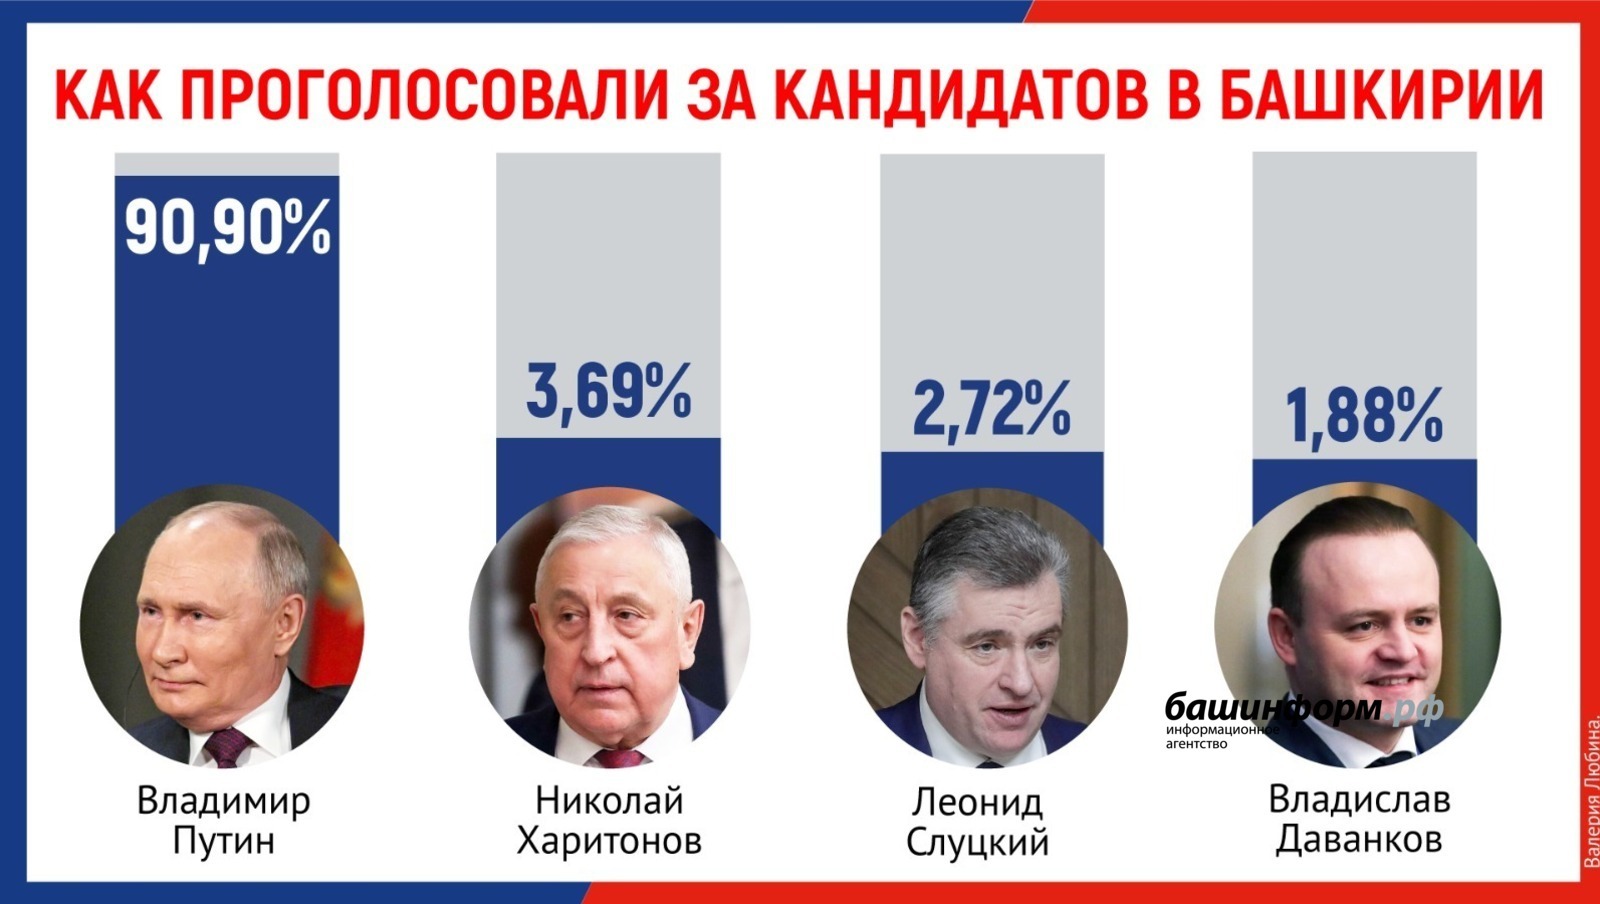 Центральная избирательная комиссия Башкирии подвела итоги выборов Президента Российской Федерации